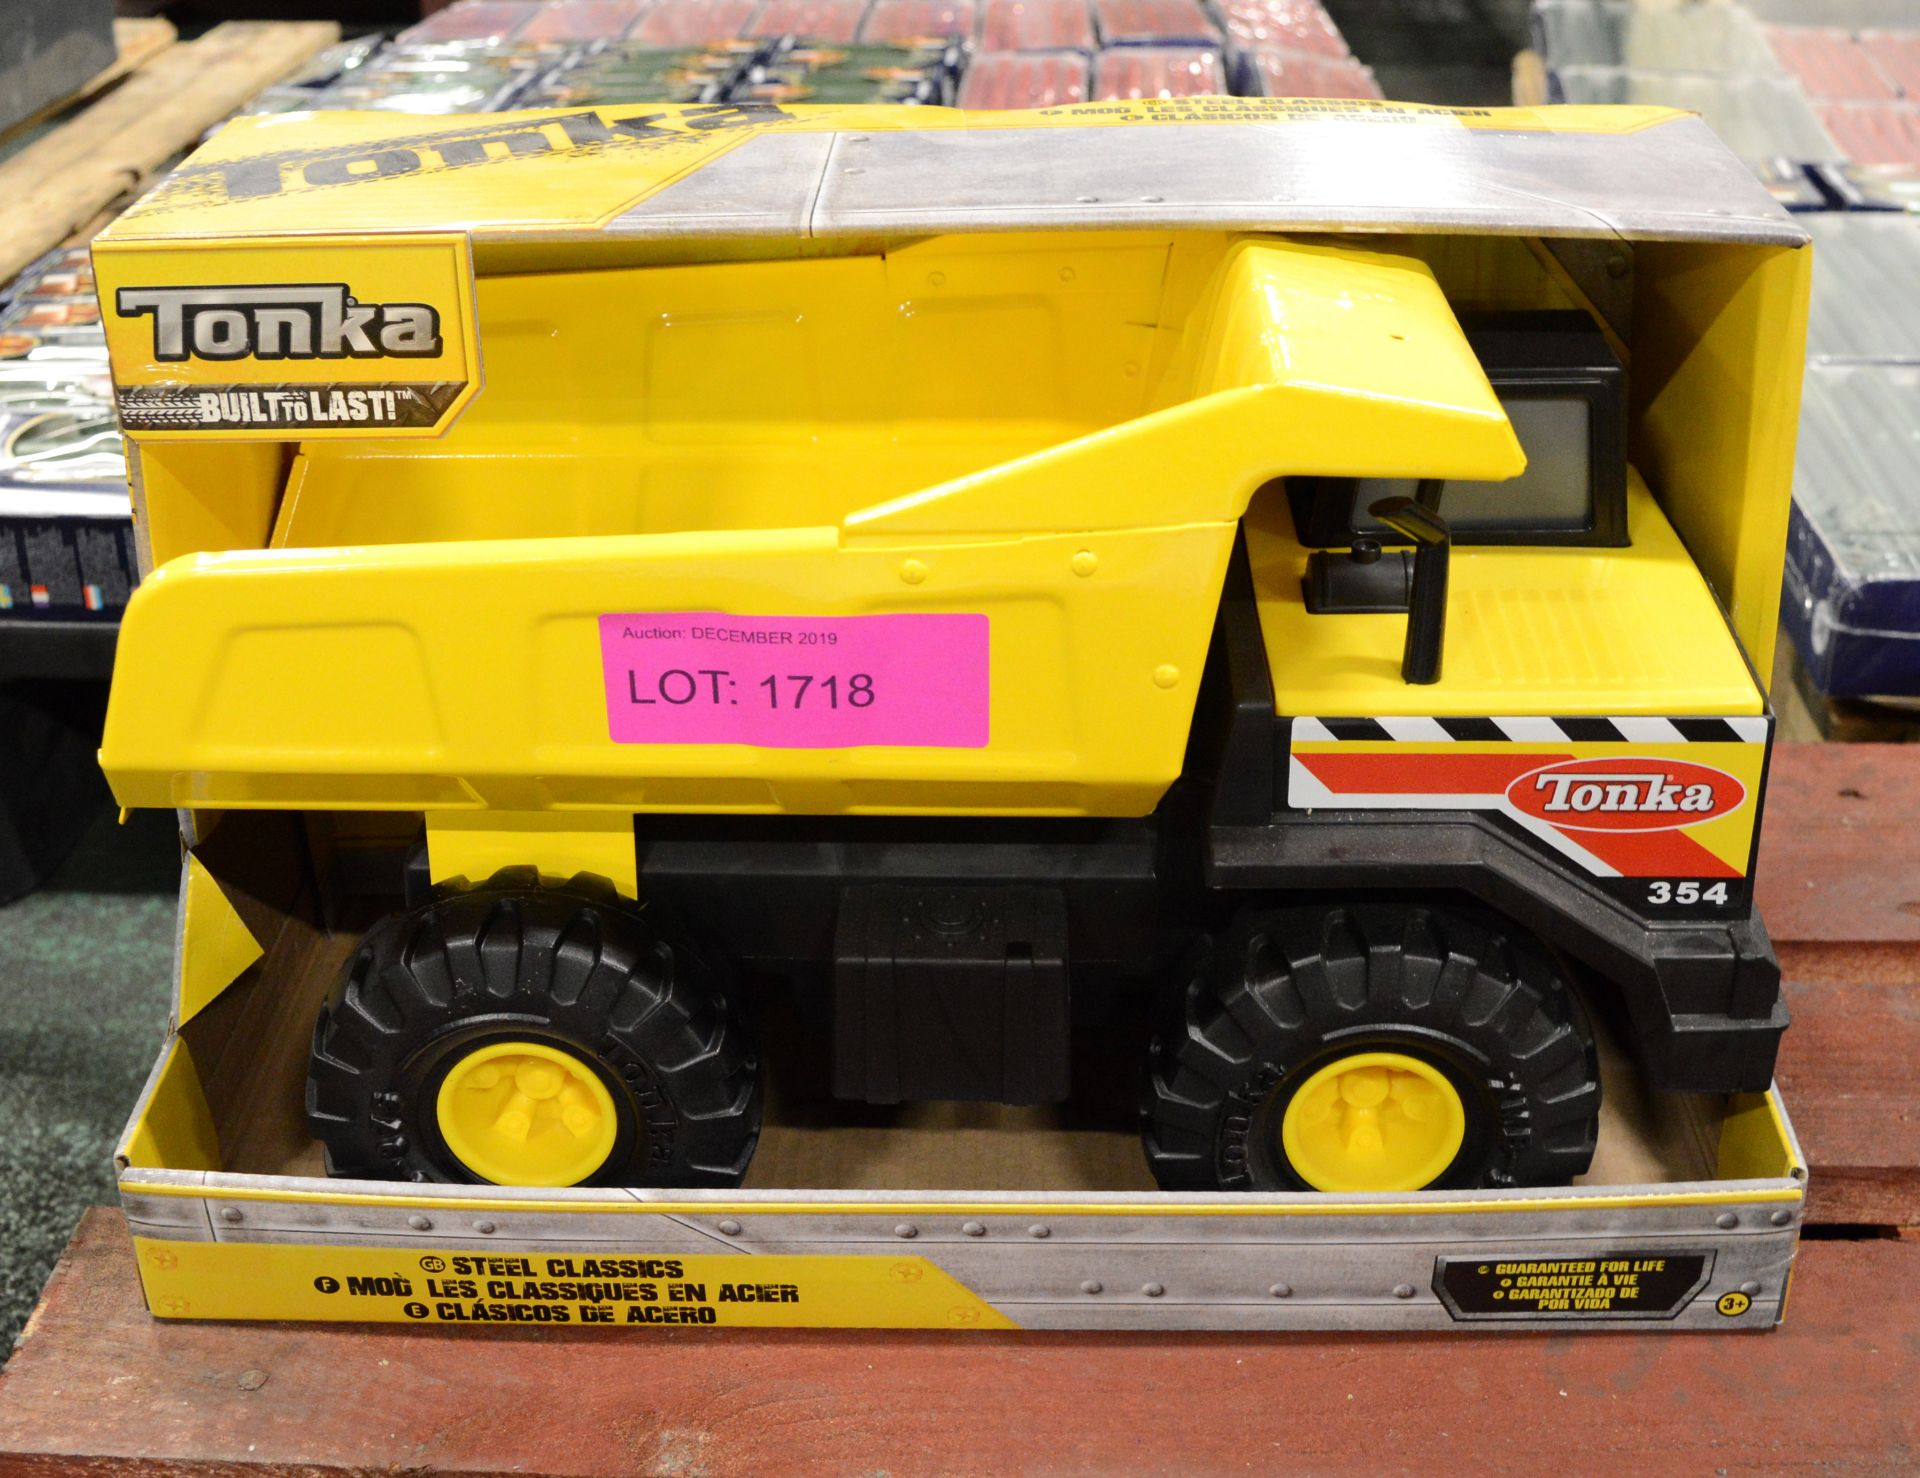 Tonka 354 Toy Tipper Truck - Unused in Original Packaging.